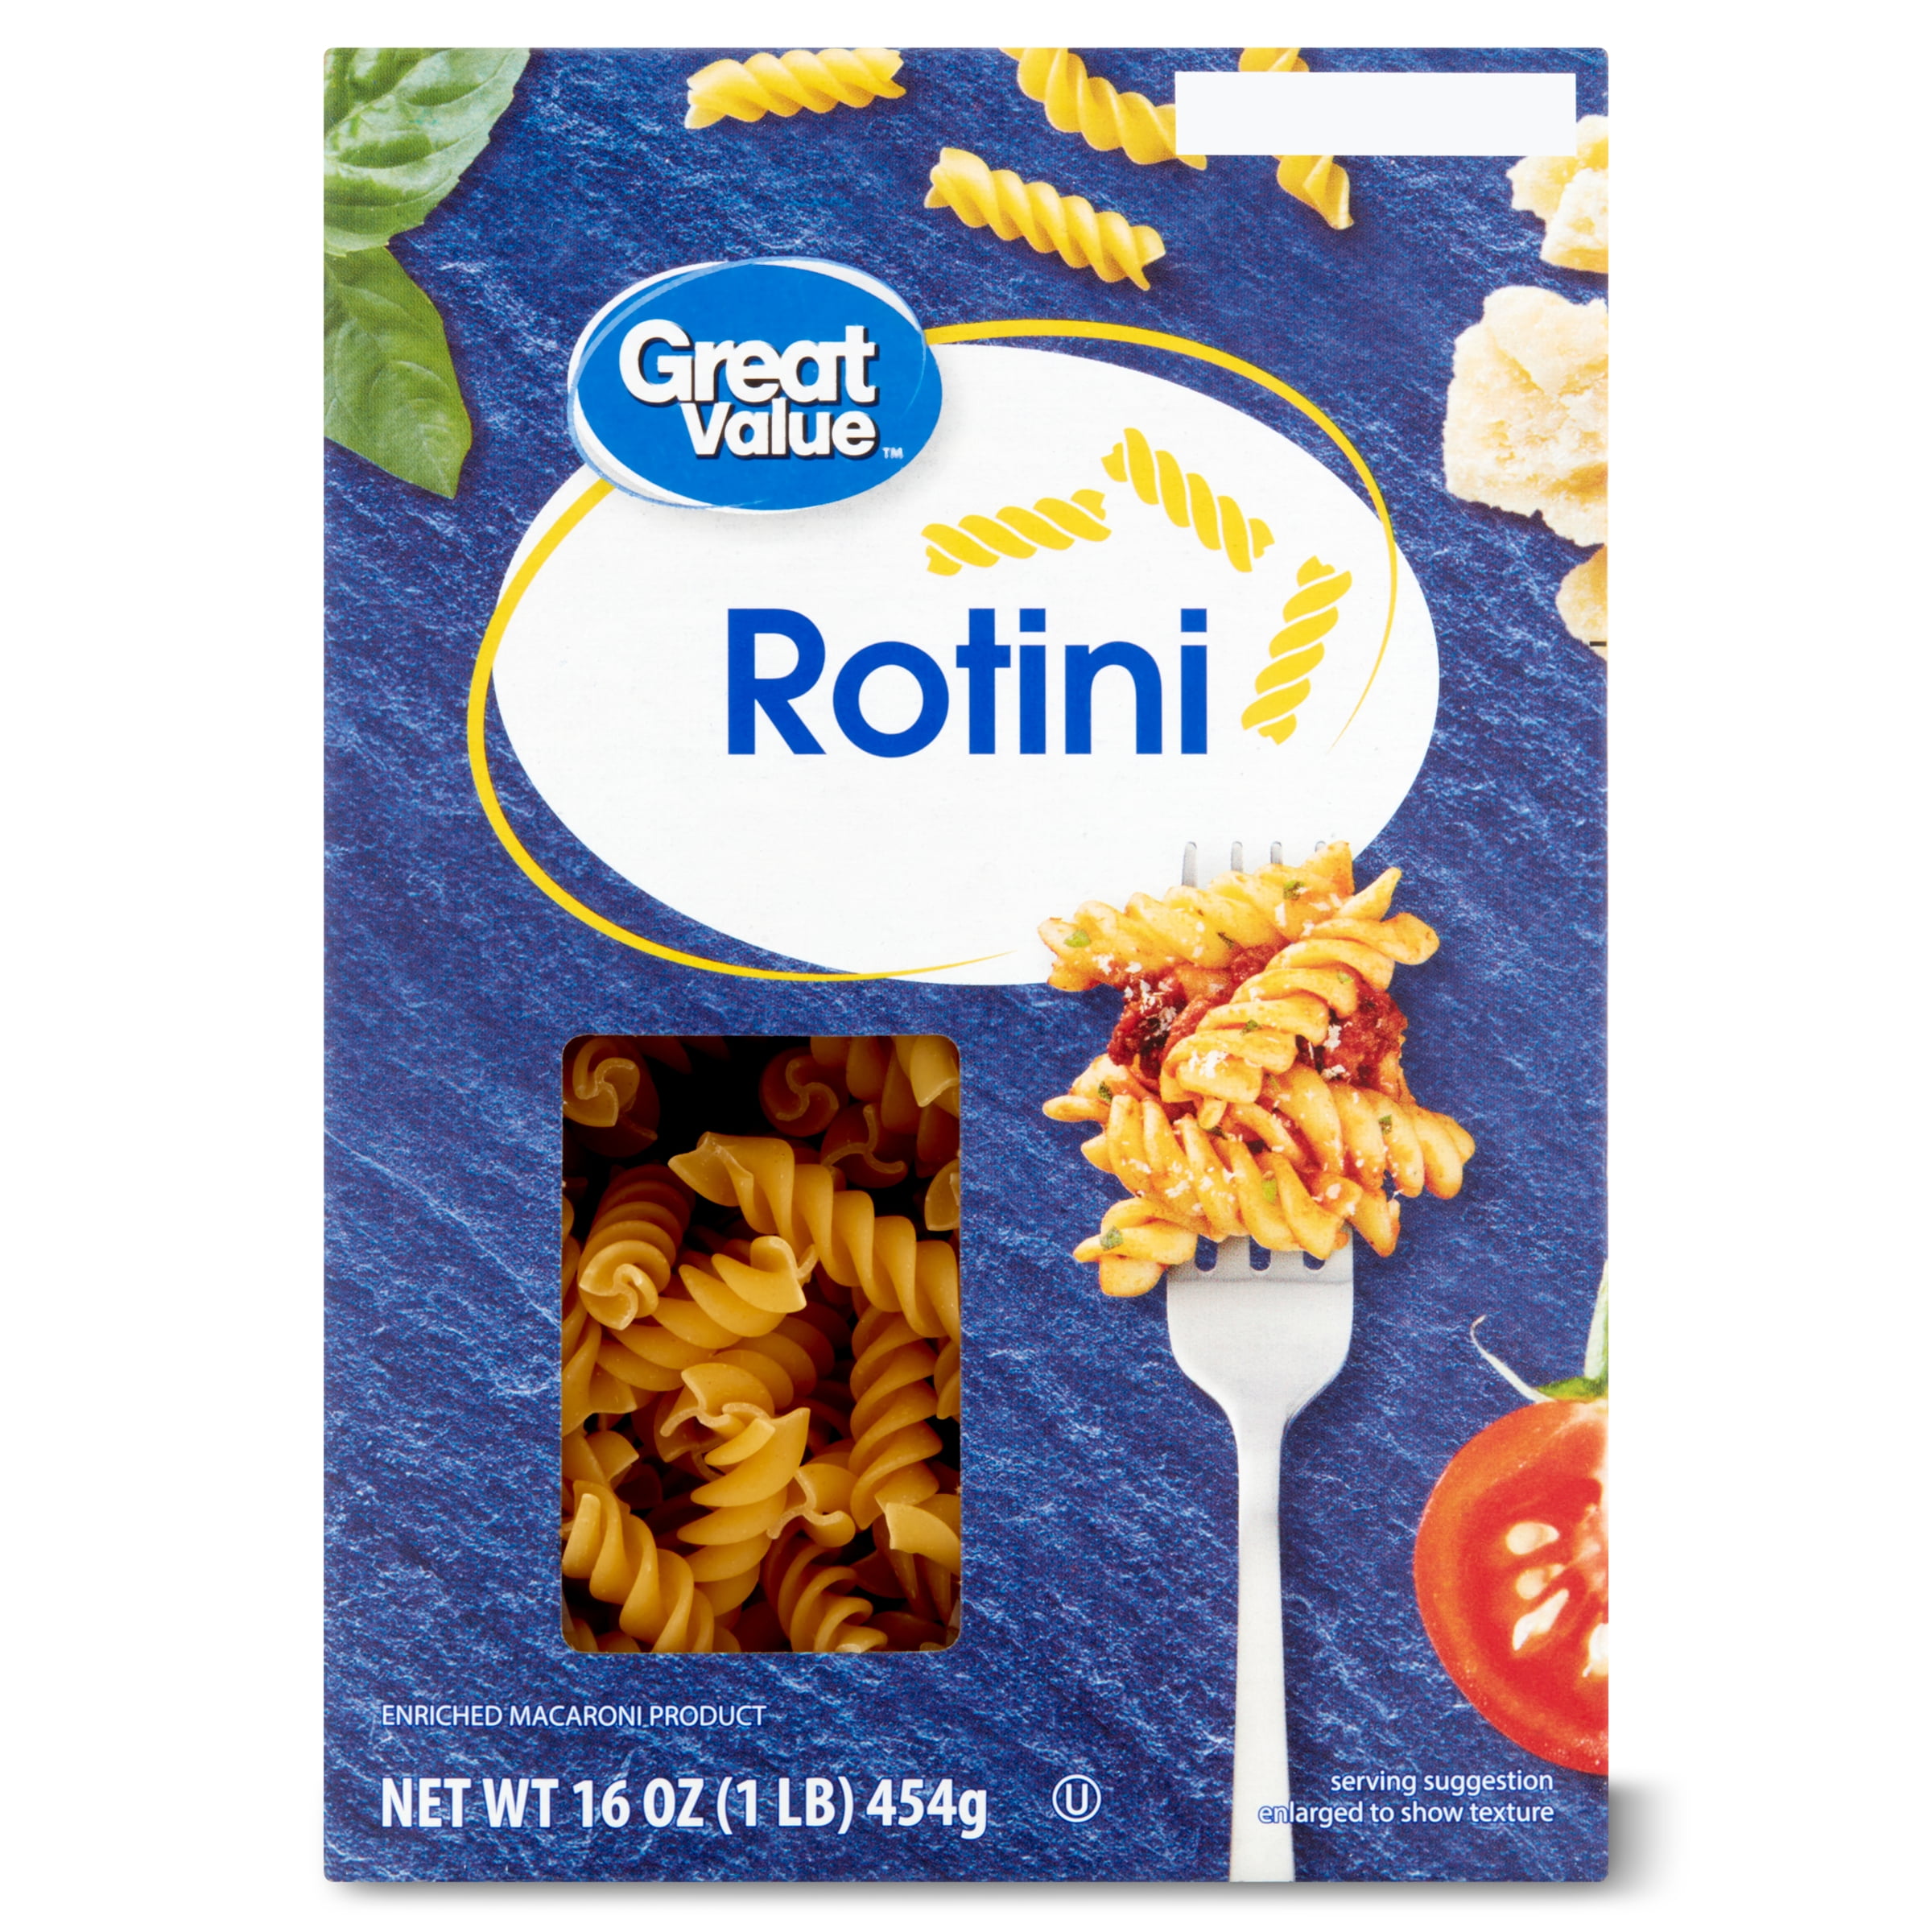 Great Value Rotini Pasta, 16 oz